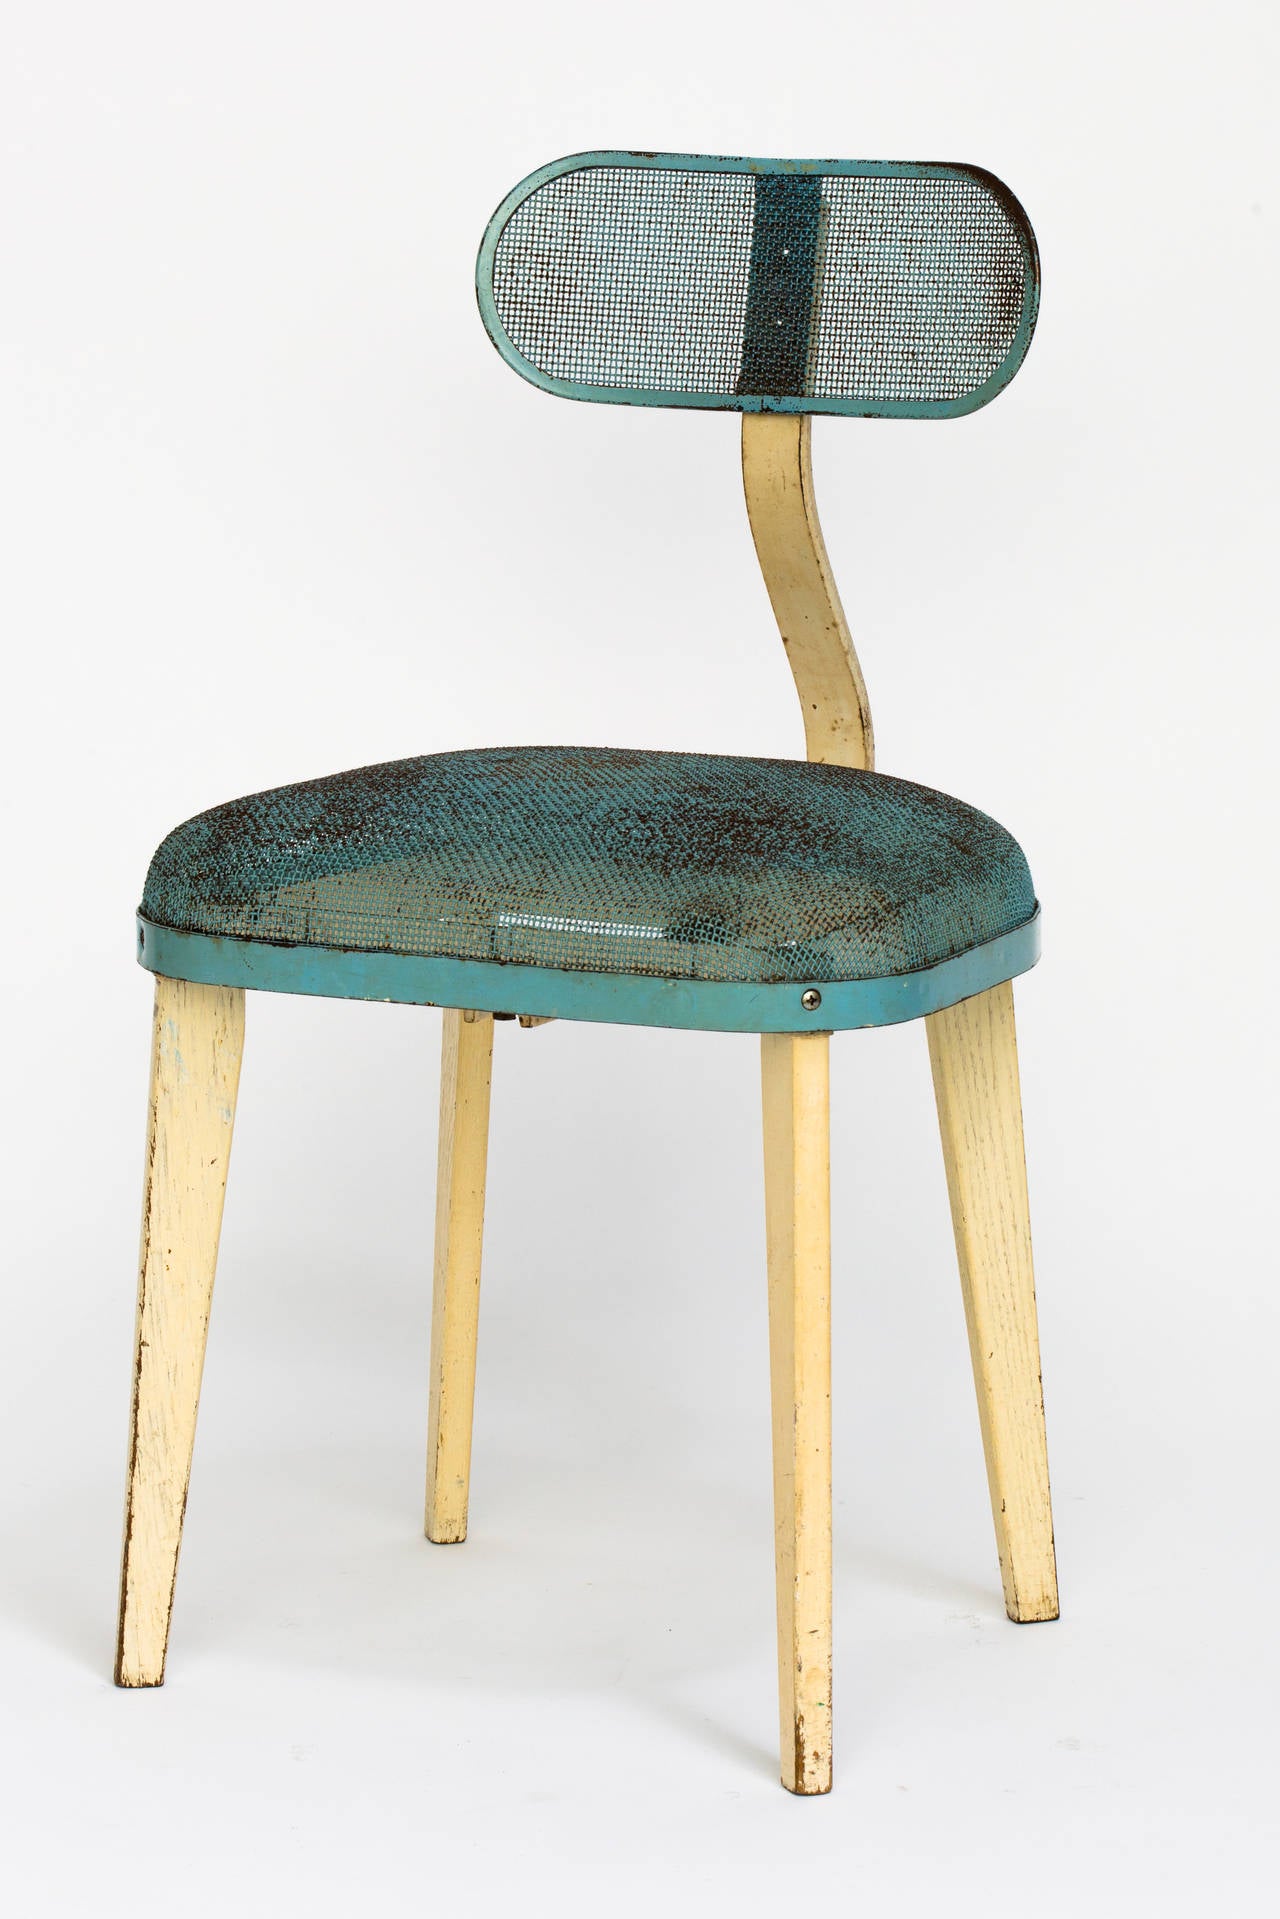 Chaise de style industriel en acier émaillé bleu et beige à la manière de Jean Prouvé.
Dossier réglable et pieds en bois.